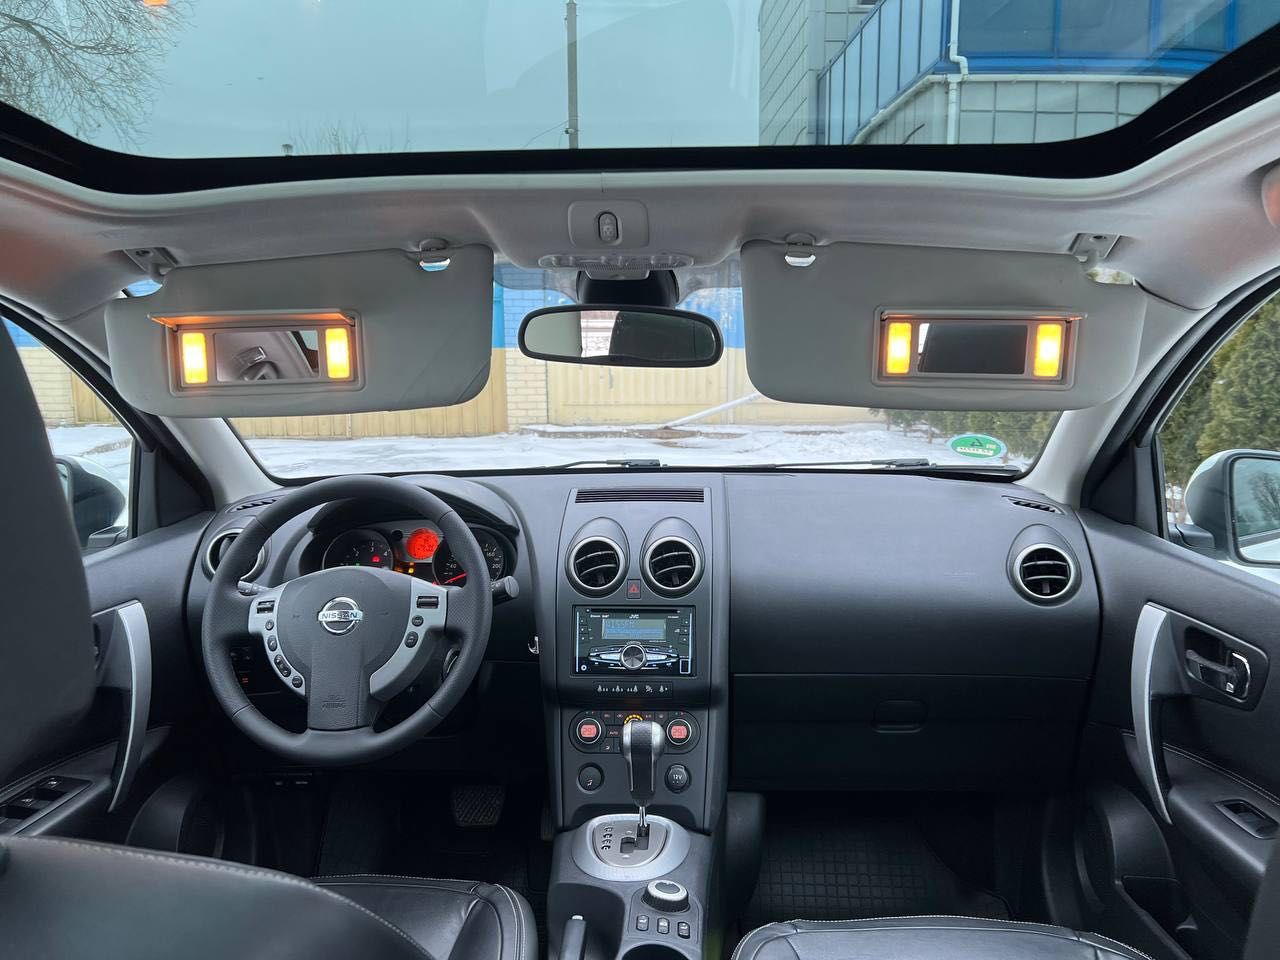 Nissan QASHQAI 4x4 2.0 dCi automat, panorama